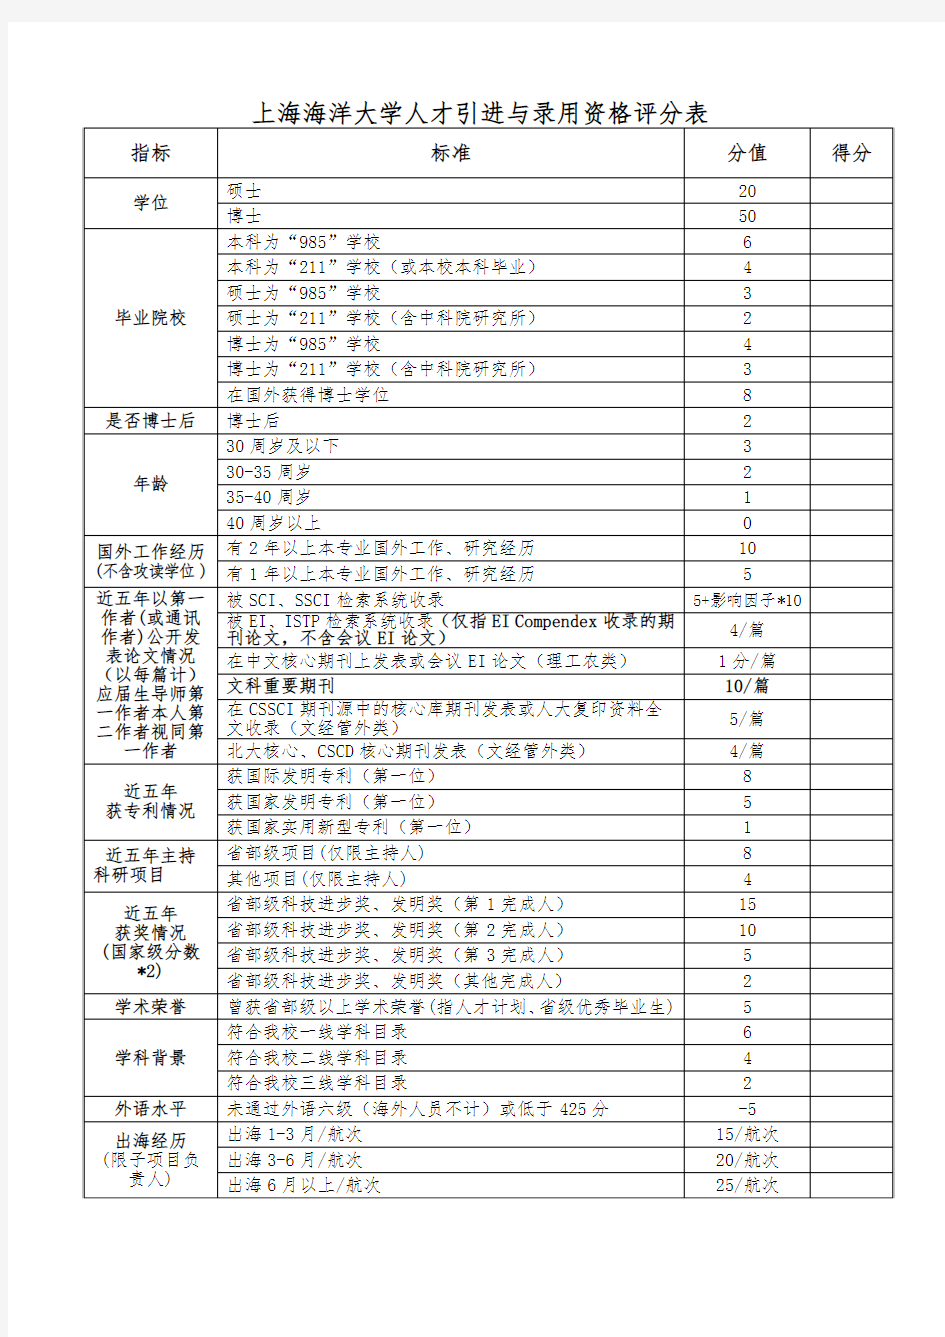 上海海洋大学人才引进与录用资格评分表(2015版)